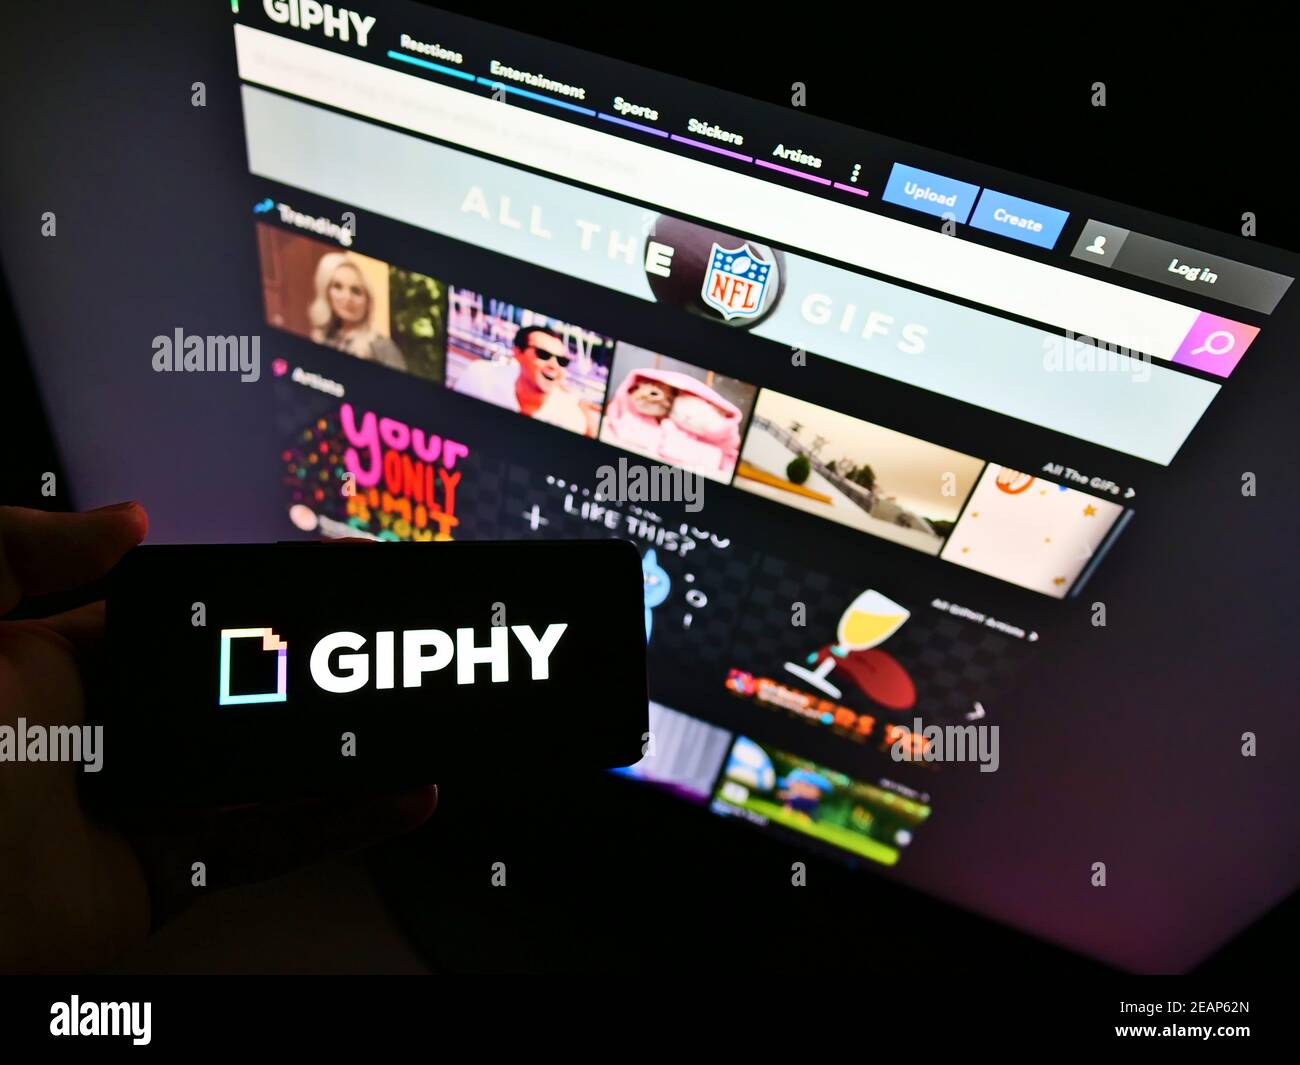 Personne tenant un smartphone avec le logo de l'entreprise de la base de données en ligne américaine (fichiers GIF) Giphy Inc. Devant le site Web. Mise au point sur l'affichage du téléphone. Banque D'Images